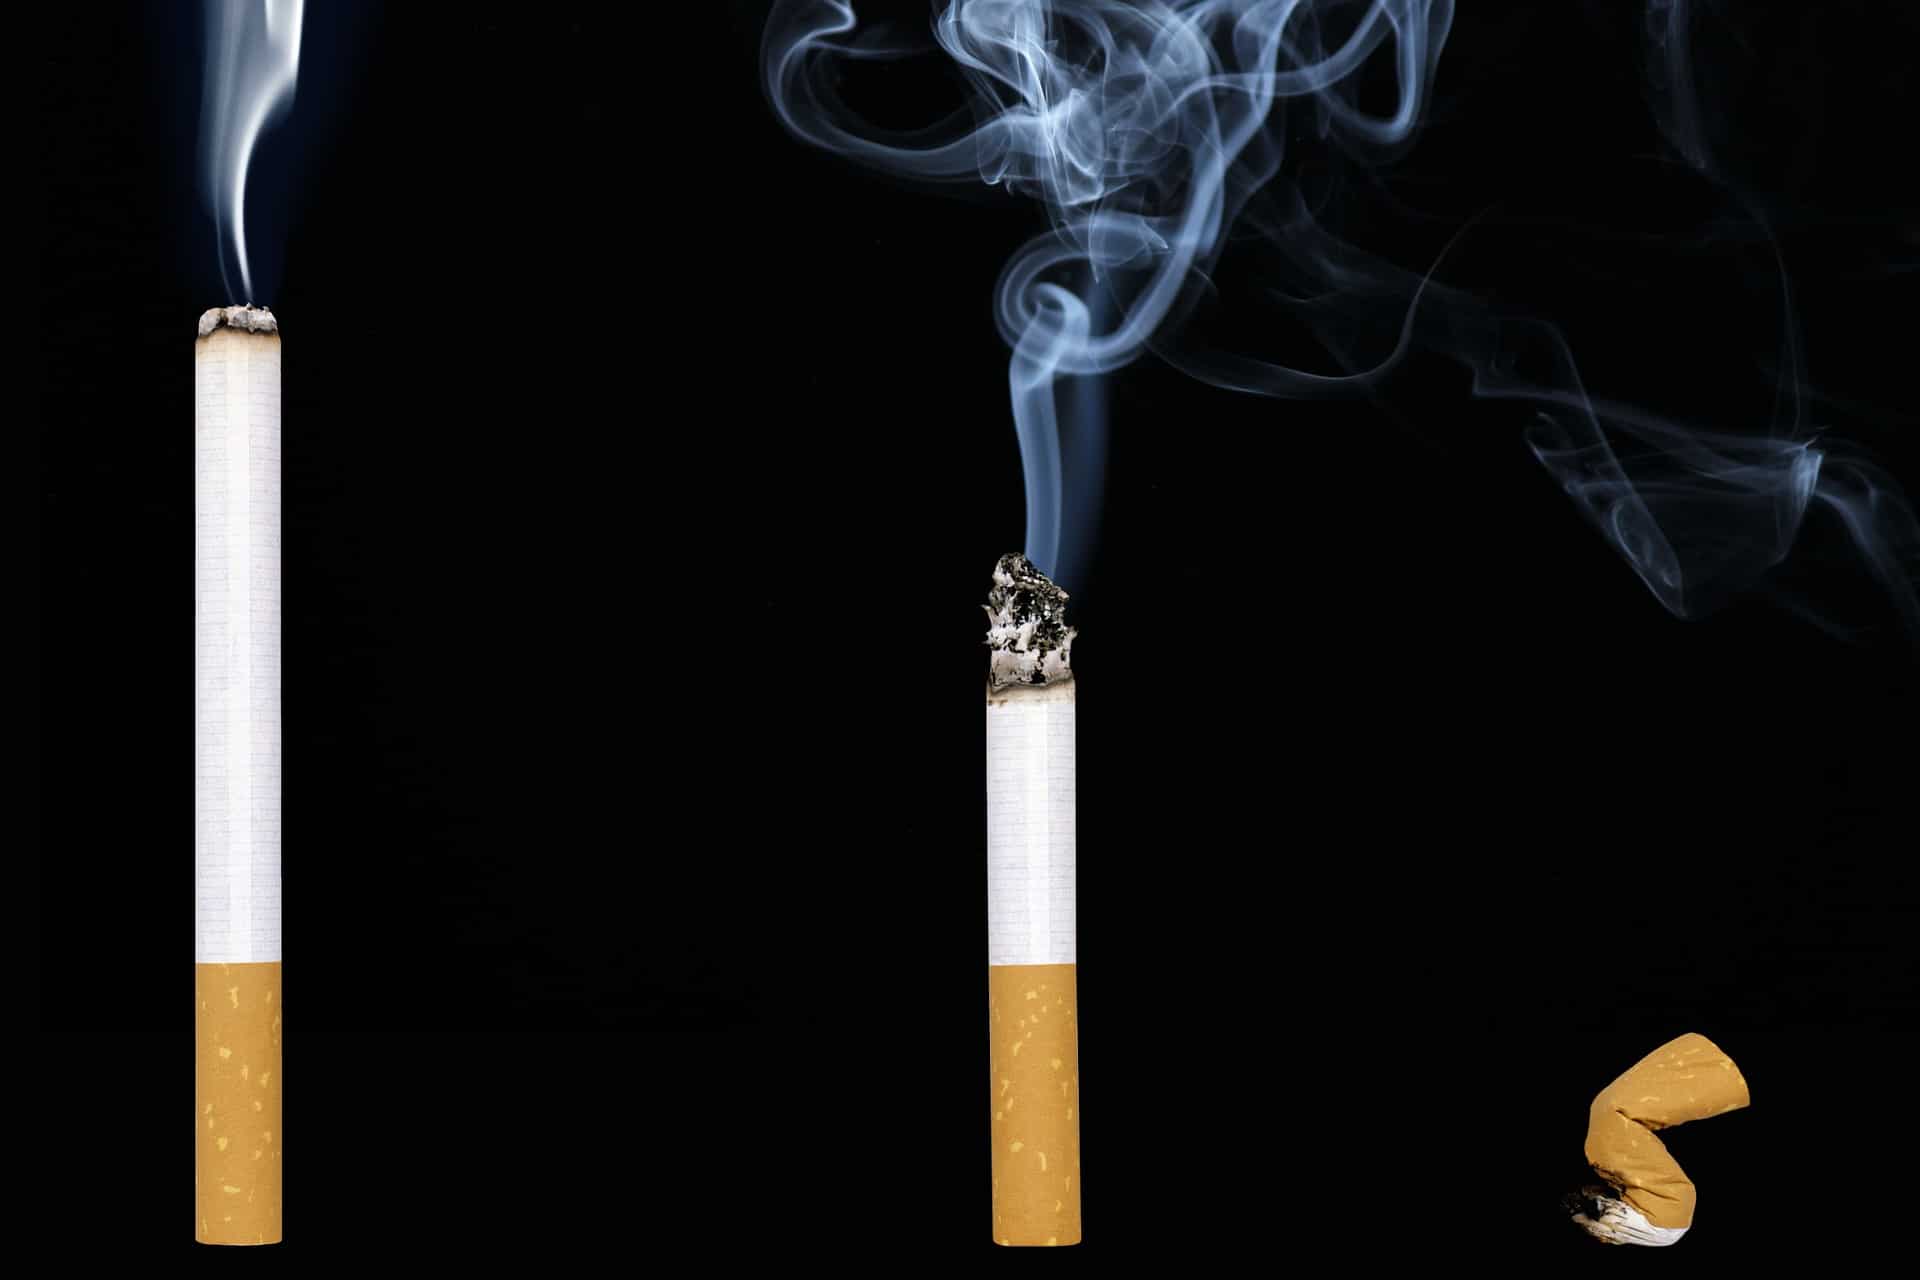 Sigarette, e-cig e tabacco riscaldato: differenze ed effetti ...